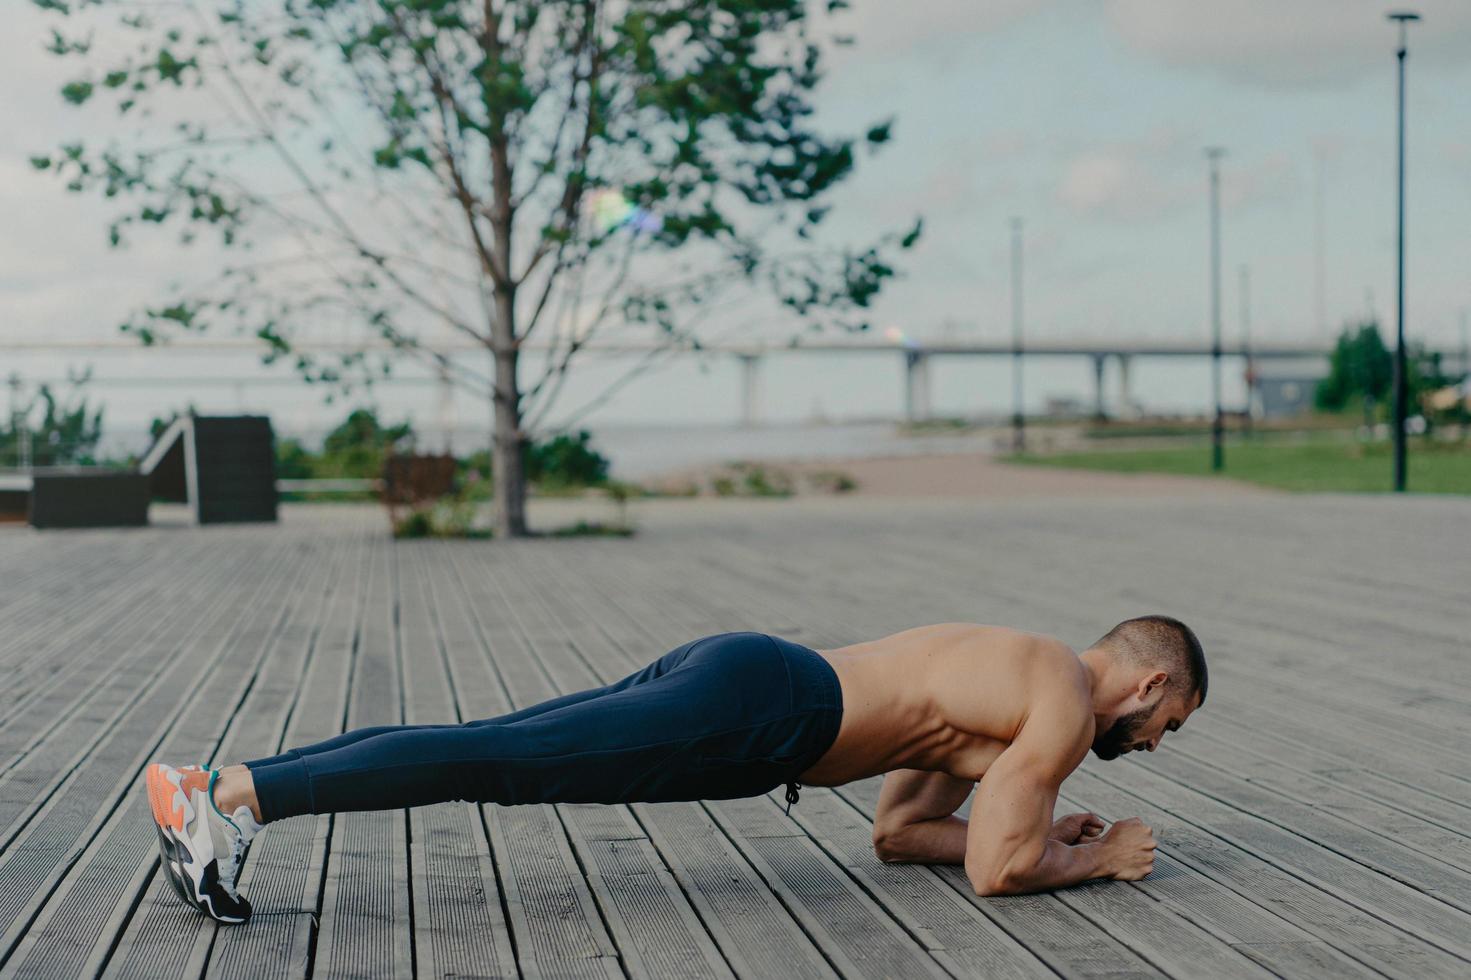 horizontale aufnahme eines sportlichen bärtigen mannes steht in plank-pose, praktiziert yoga im freien und ist in aktiver kleidung gekleidet, atmet frische luft. sport, fitness und gesundes lebensstilkonzept. Trainingstraining foto